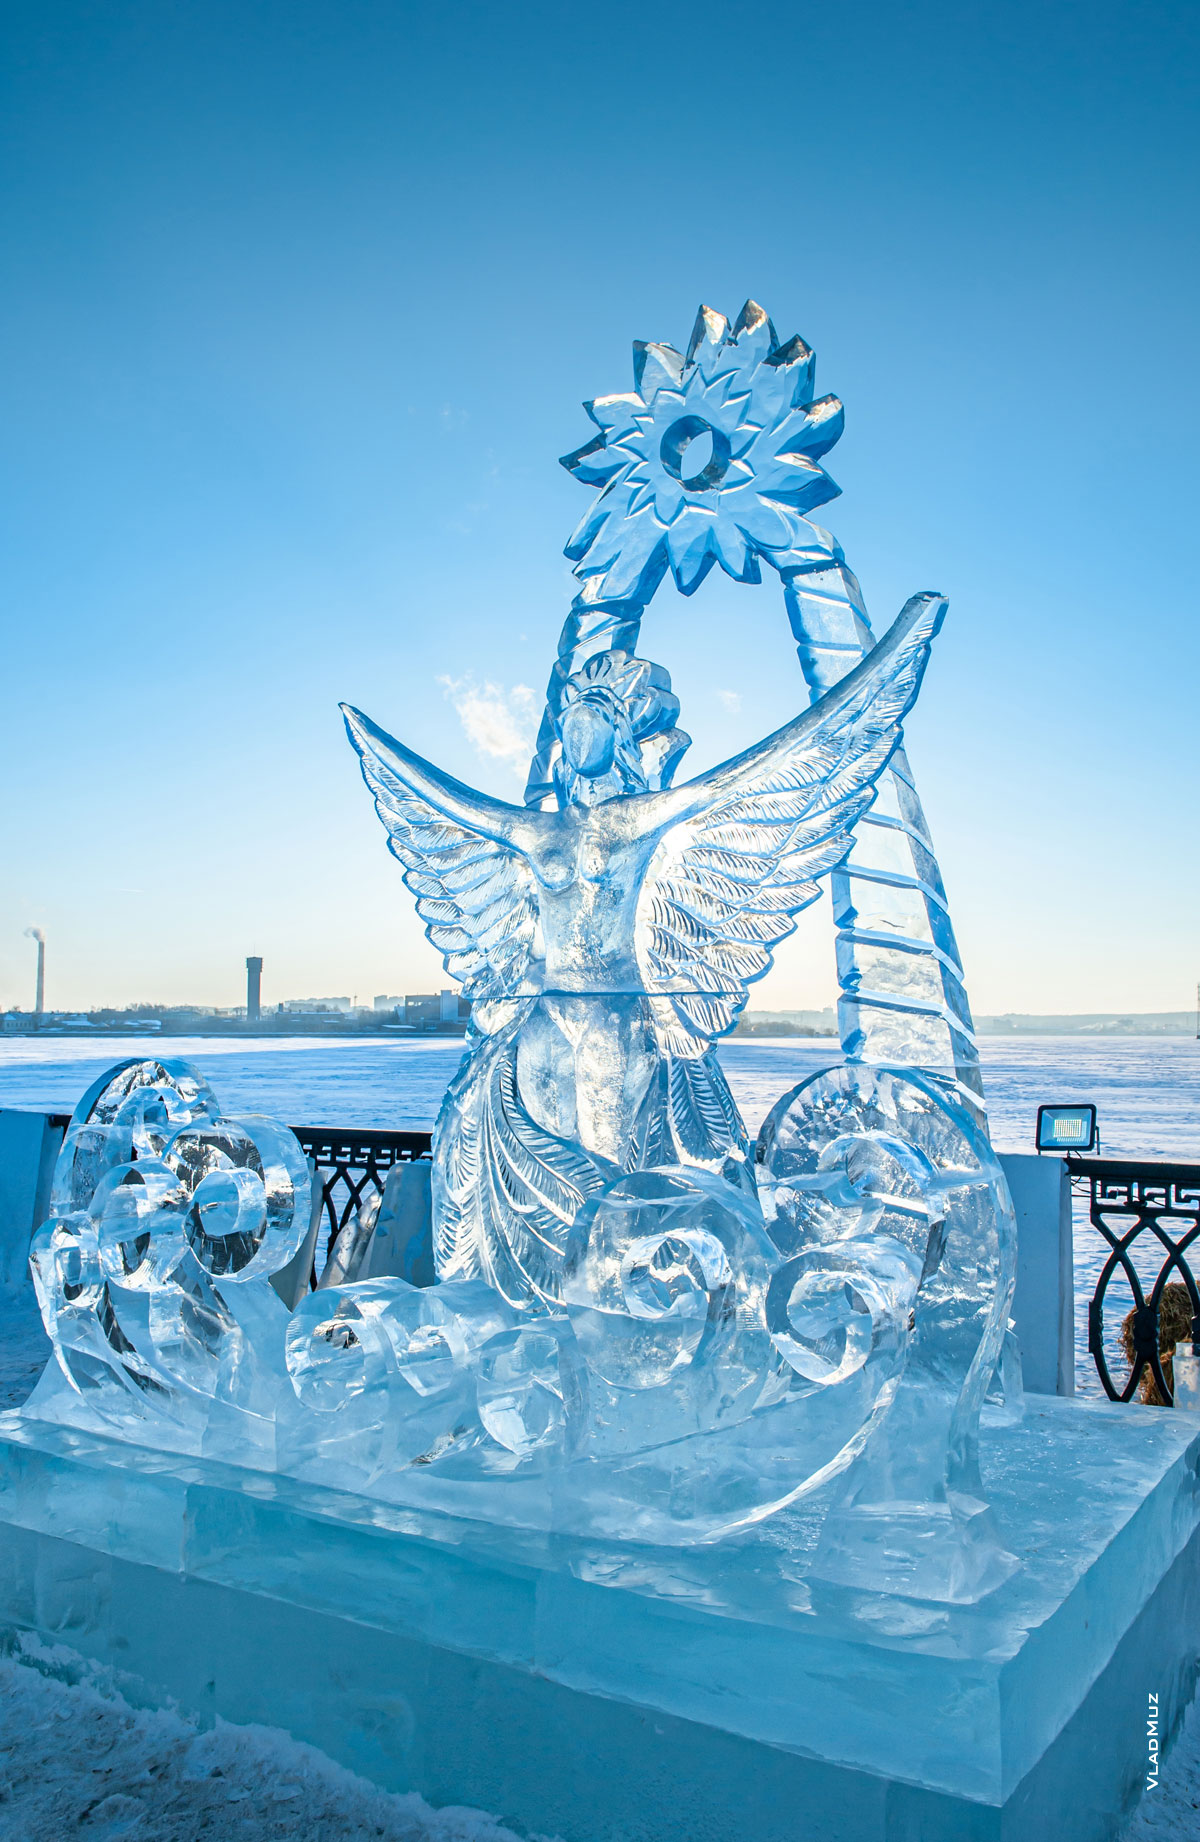 Фото ледовой скульптуры «Царевна-Лебедь» на фестивале «Удмуртский лед 2018» в Ижевске